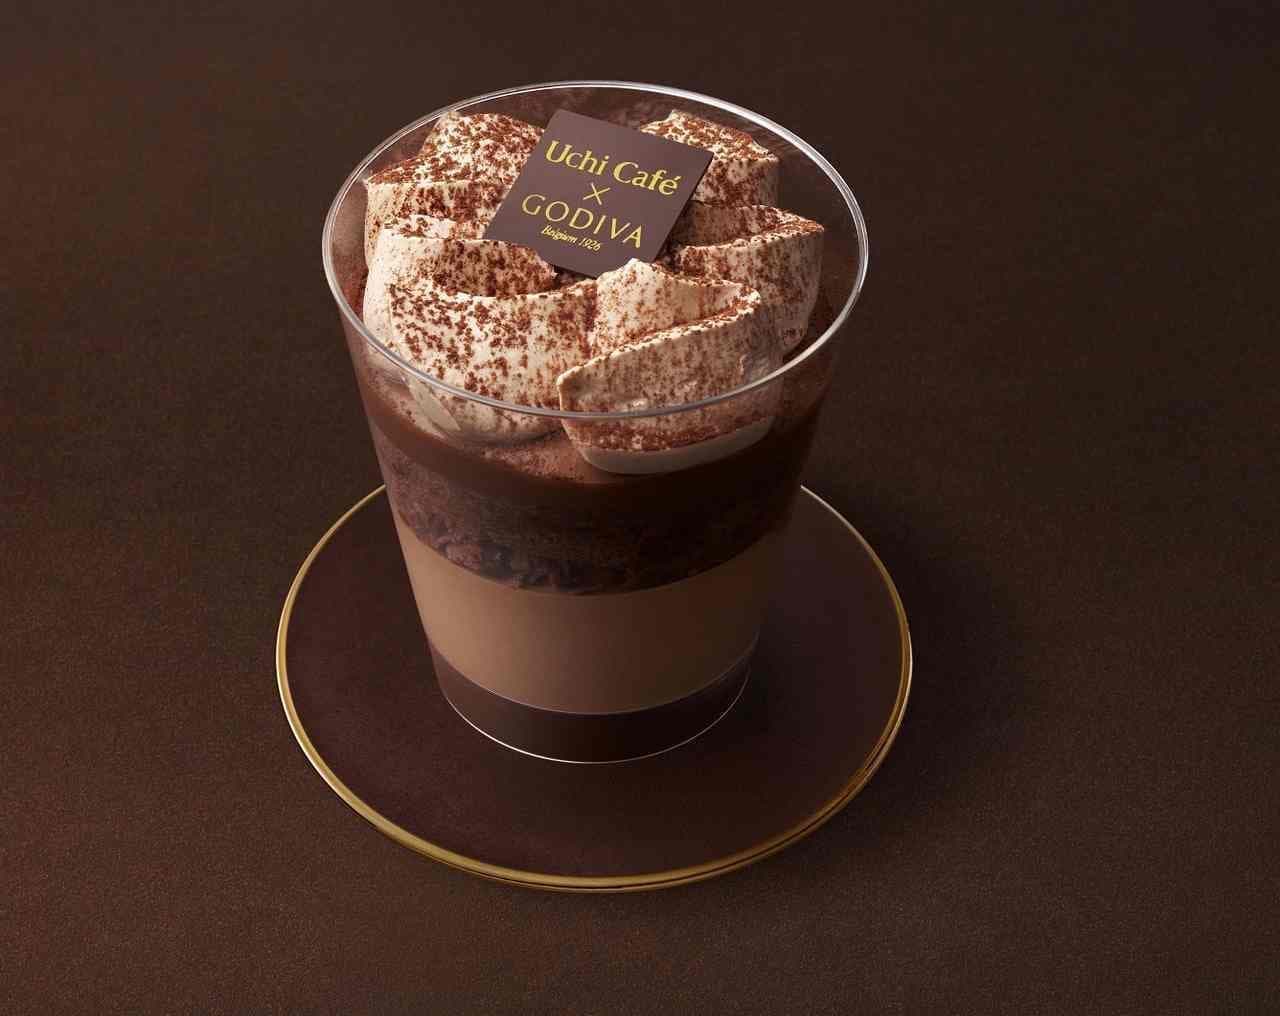 LAWSON "Uchi Cafe×GODIVA Chocolat Parfait" supervised by Godiva